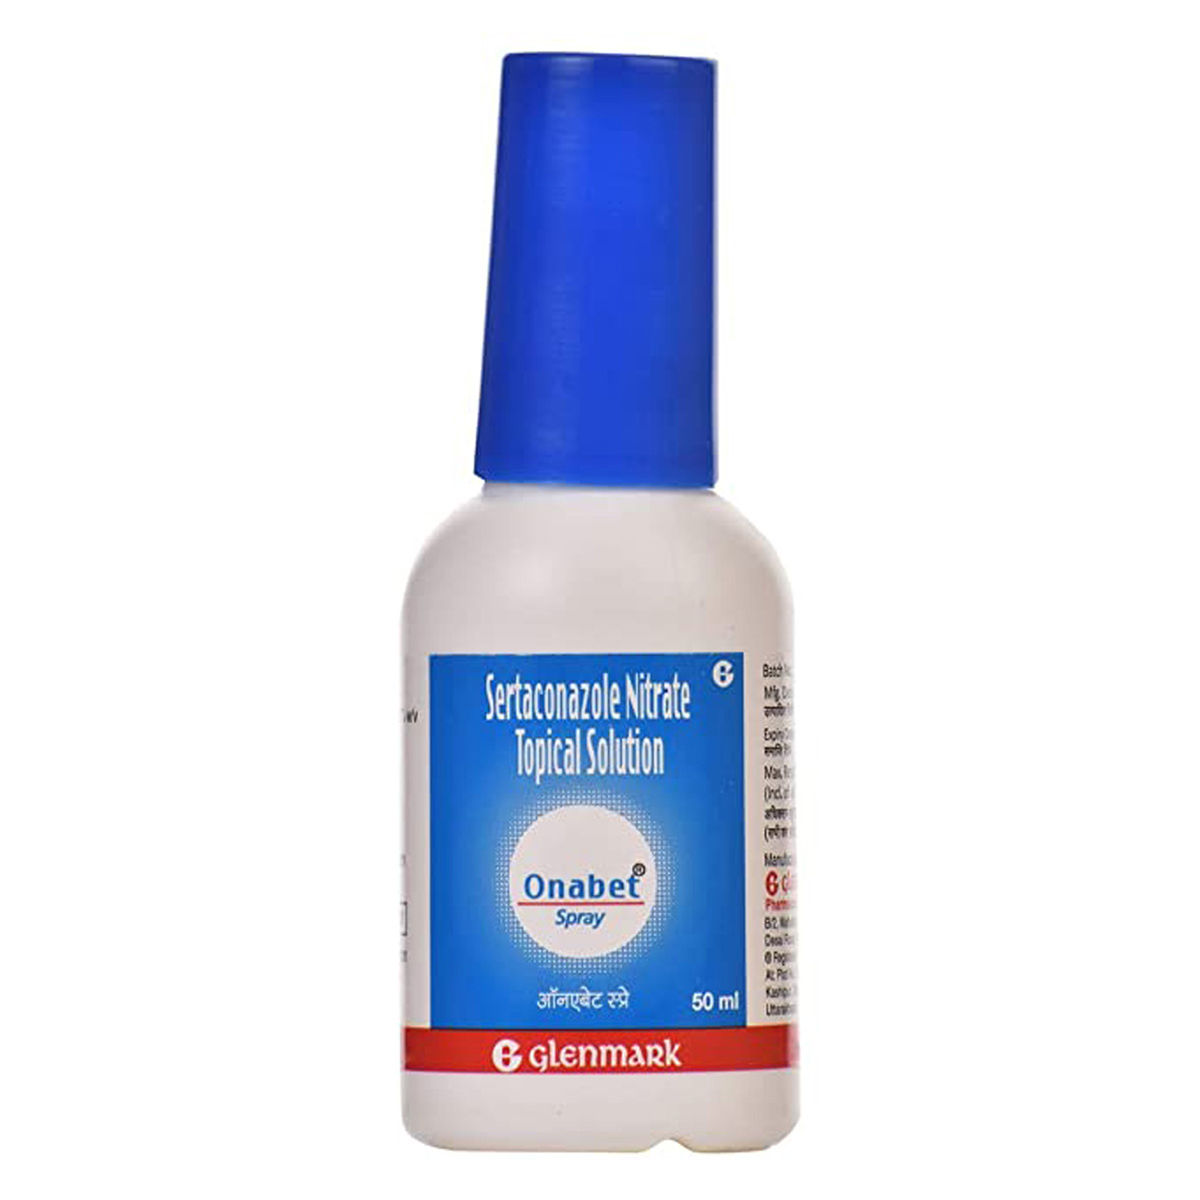 Buy Onabet Spray, 50 ml Online